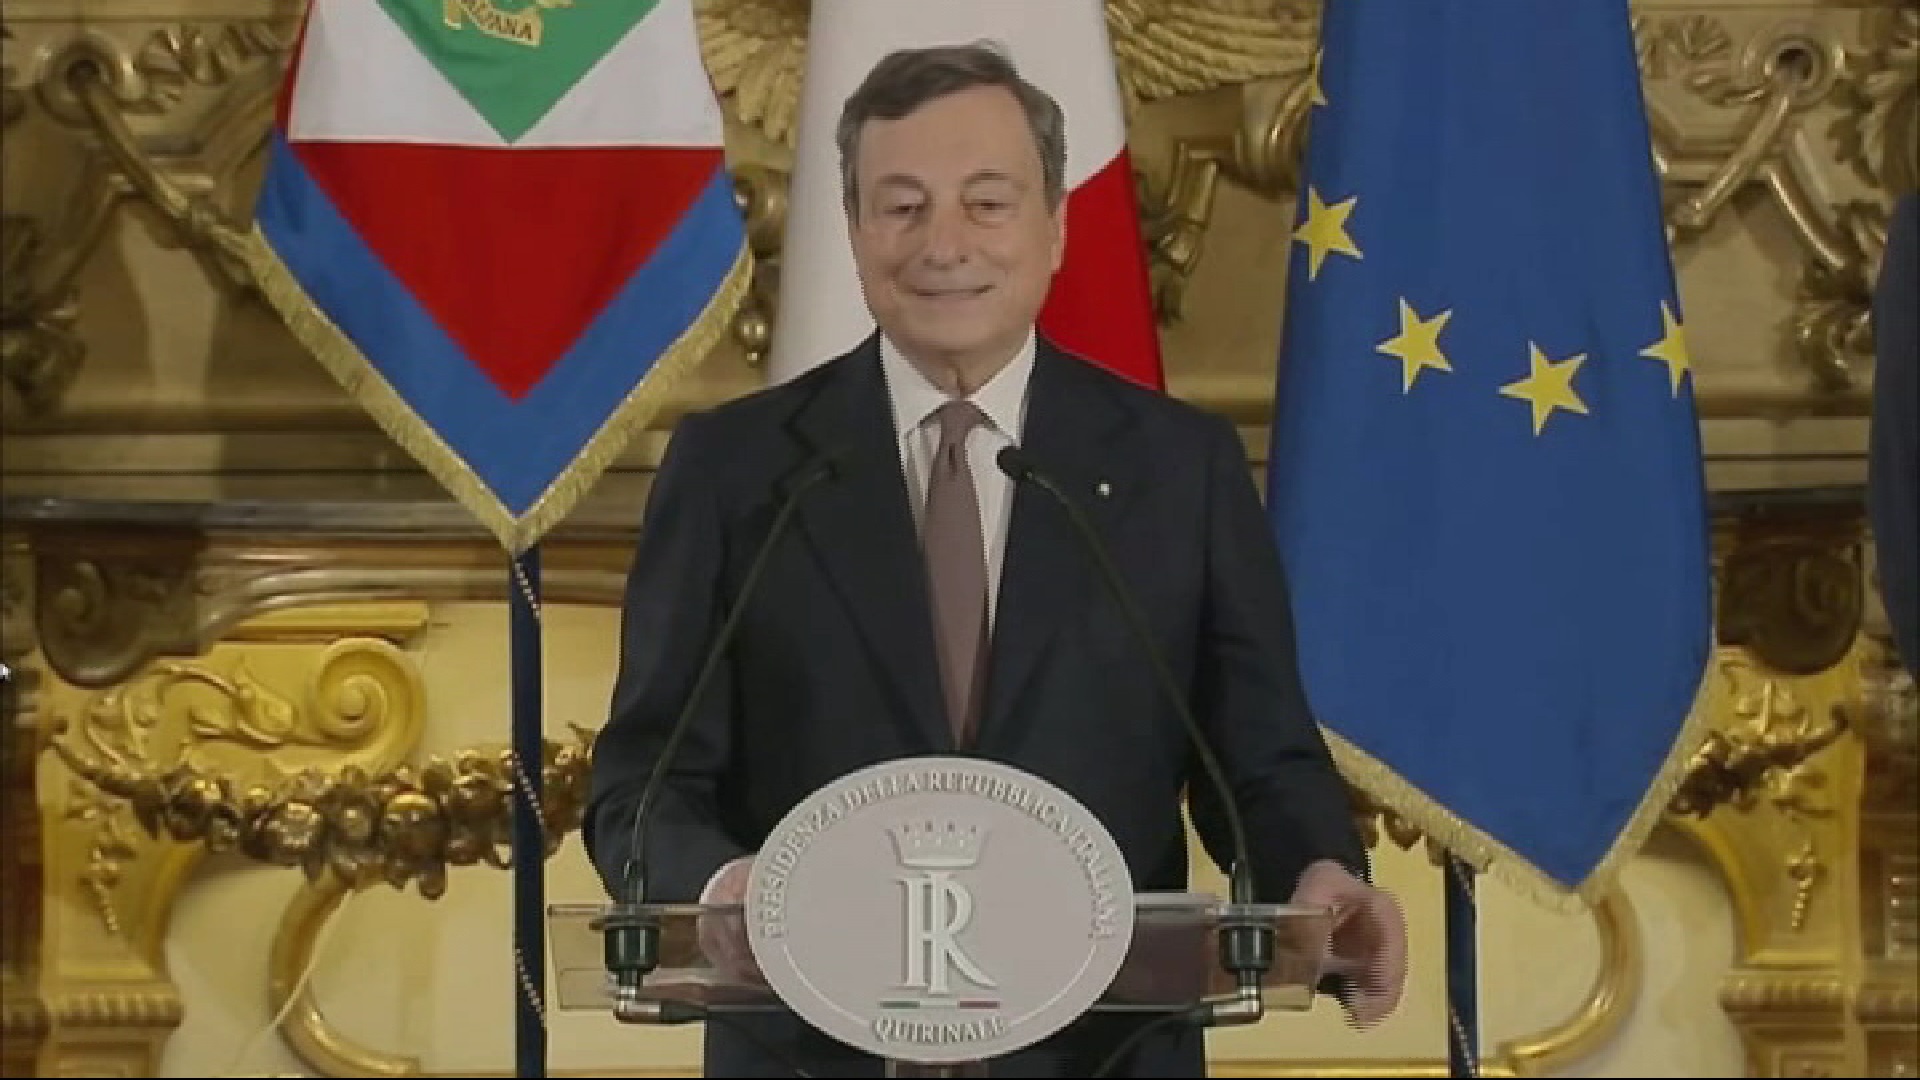 Draghi suporta el seu govern en polítics però dona Ecologia i Economia a tècnics